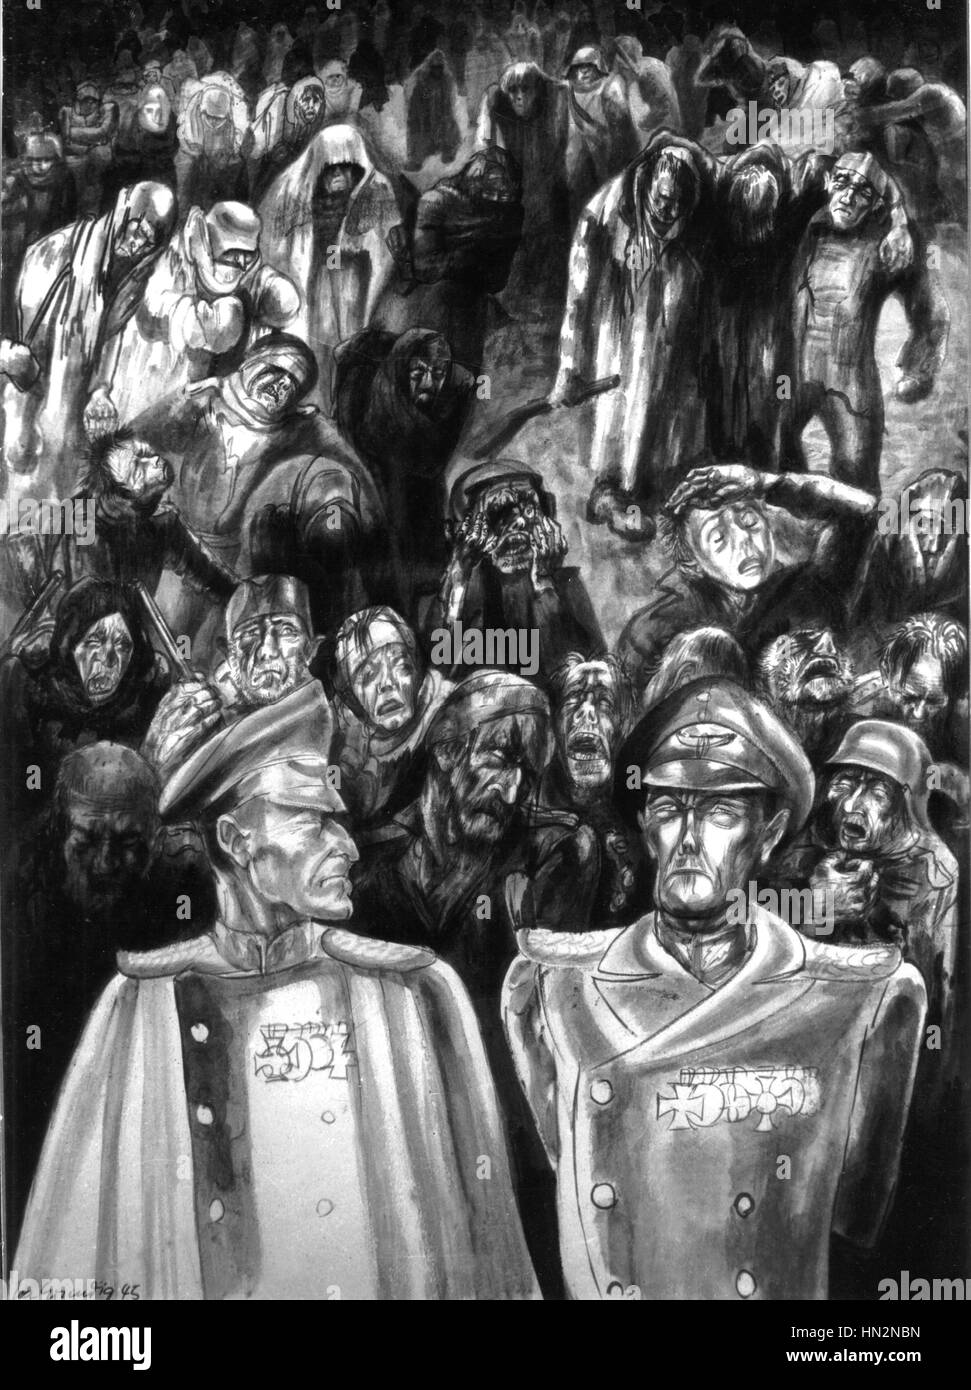 Kupferstich von Lea Grundig: "Armee und Generäle in Stalingrad", in der Arbeit "Nie wieder" Deutschland 1945 Stockfoto